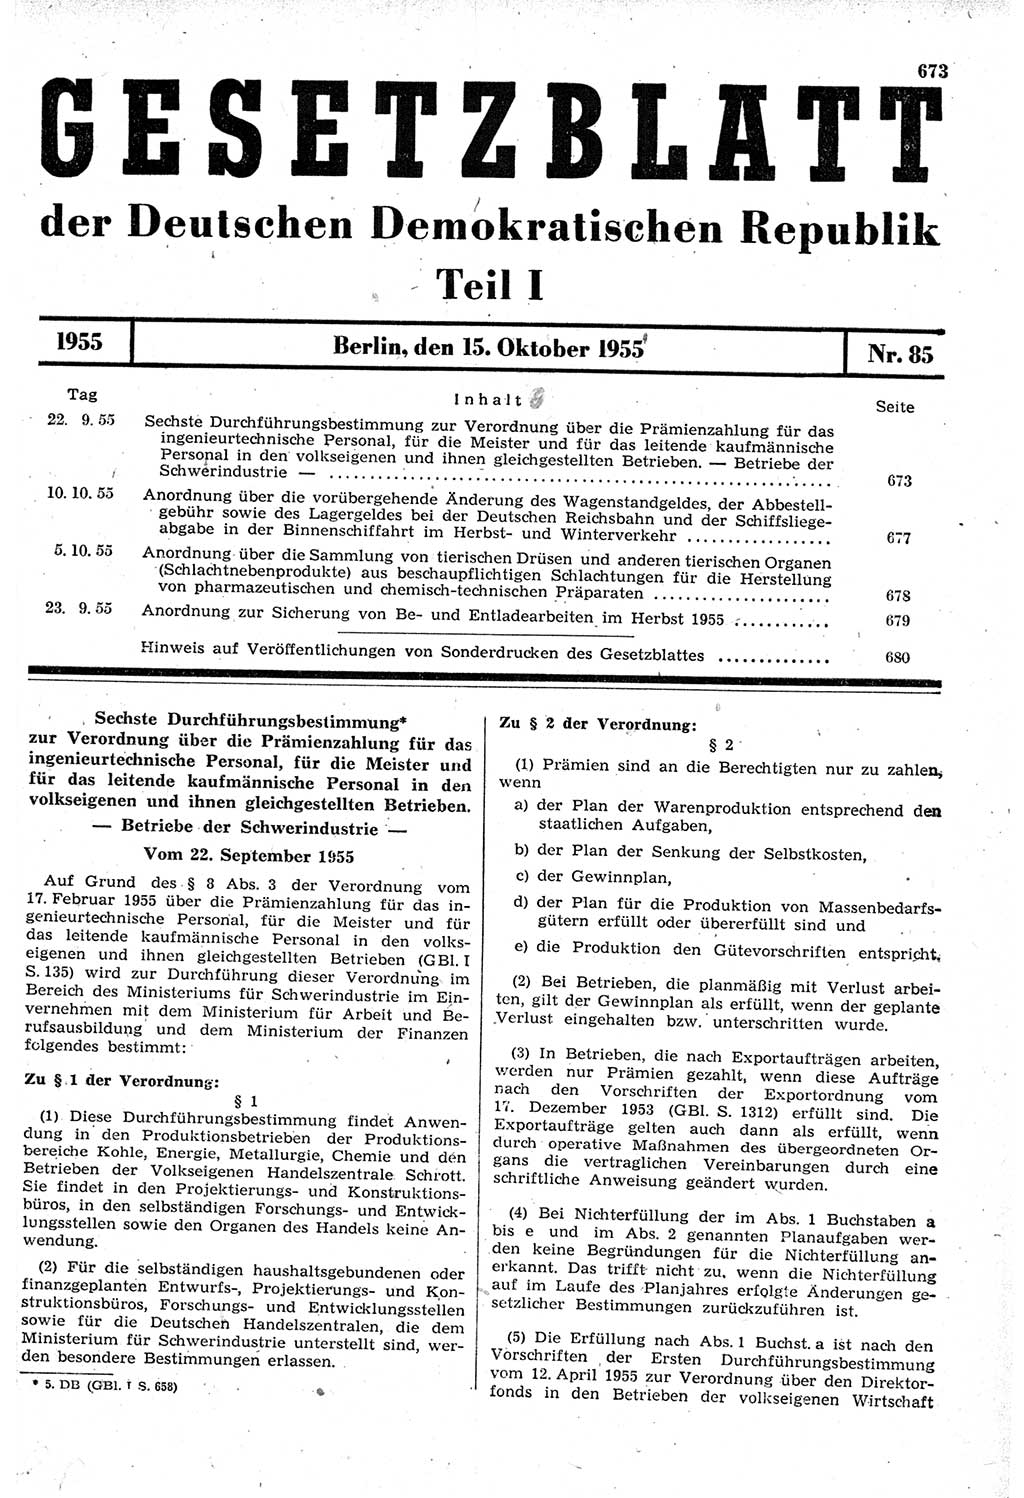 Gesetzblatt (GBl.) der Deutschen Demokratischen Republik (DDR) Teil Ⅰ 1955, Seite 673 (GBl. DDR Ⅰ 1955, S. 673)